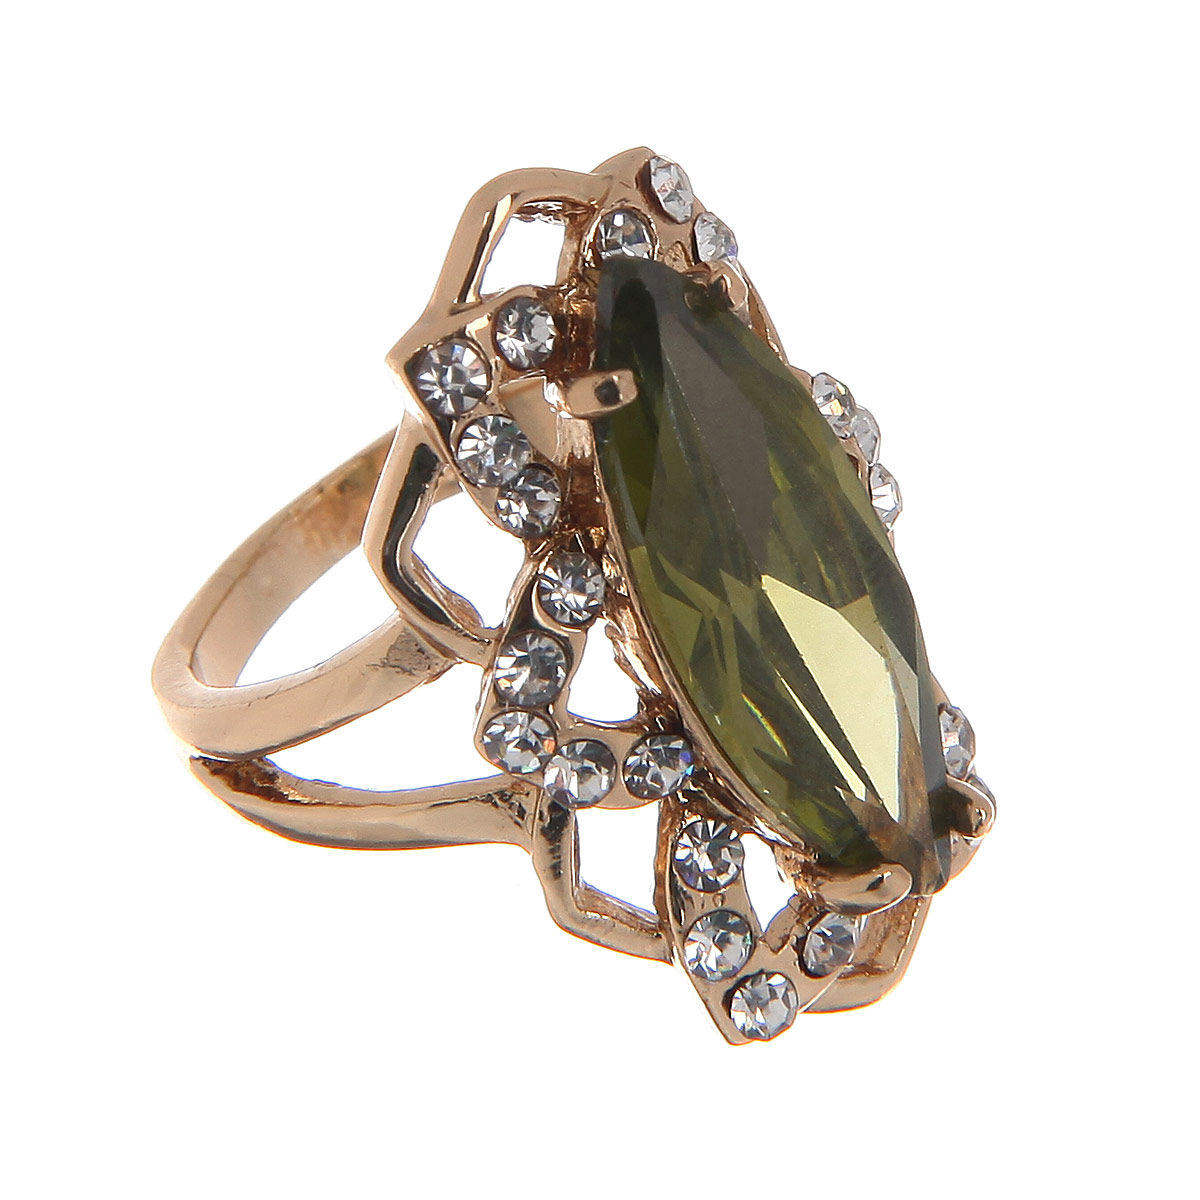 Кольцо Taya, цвет: зеленый, золотистый. Размер 16. T-B-8765